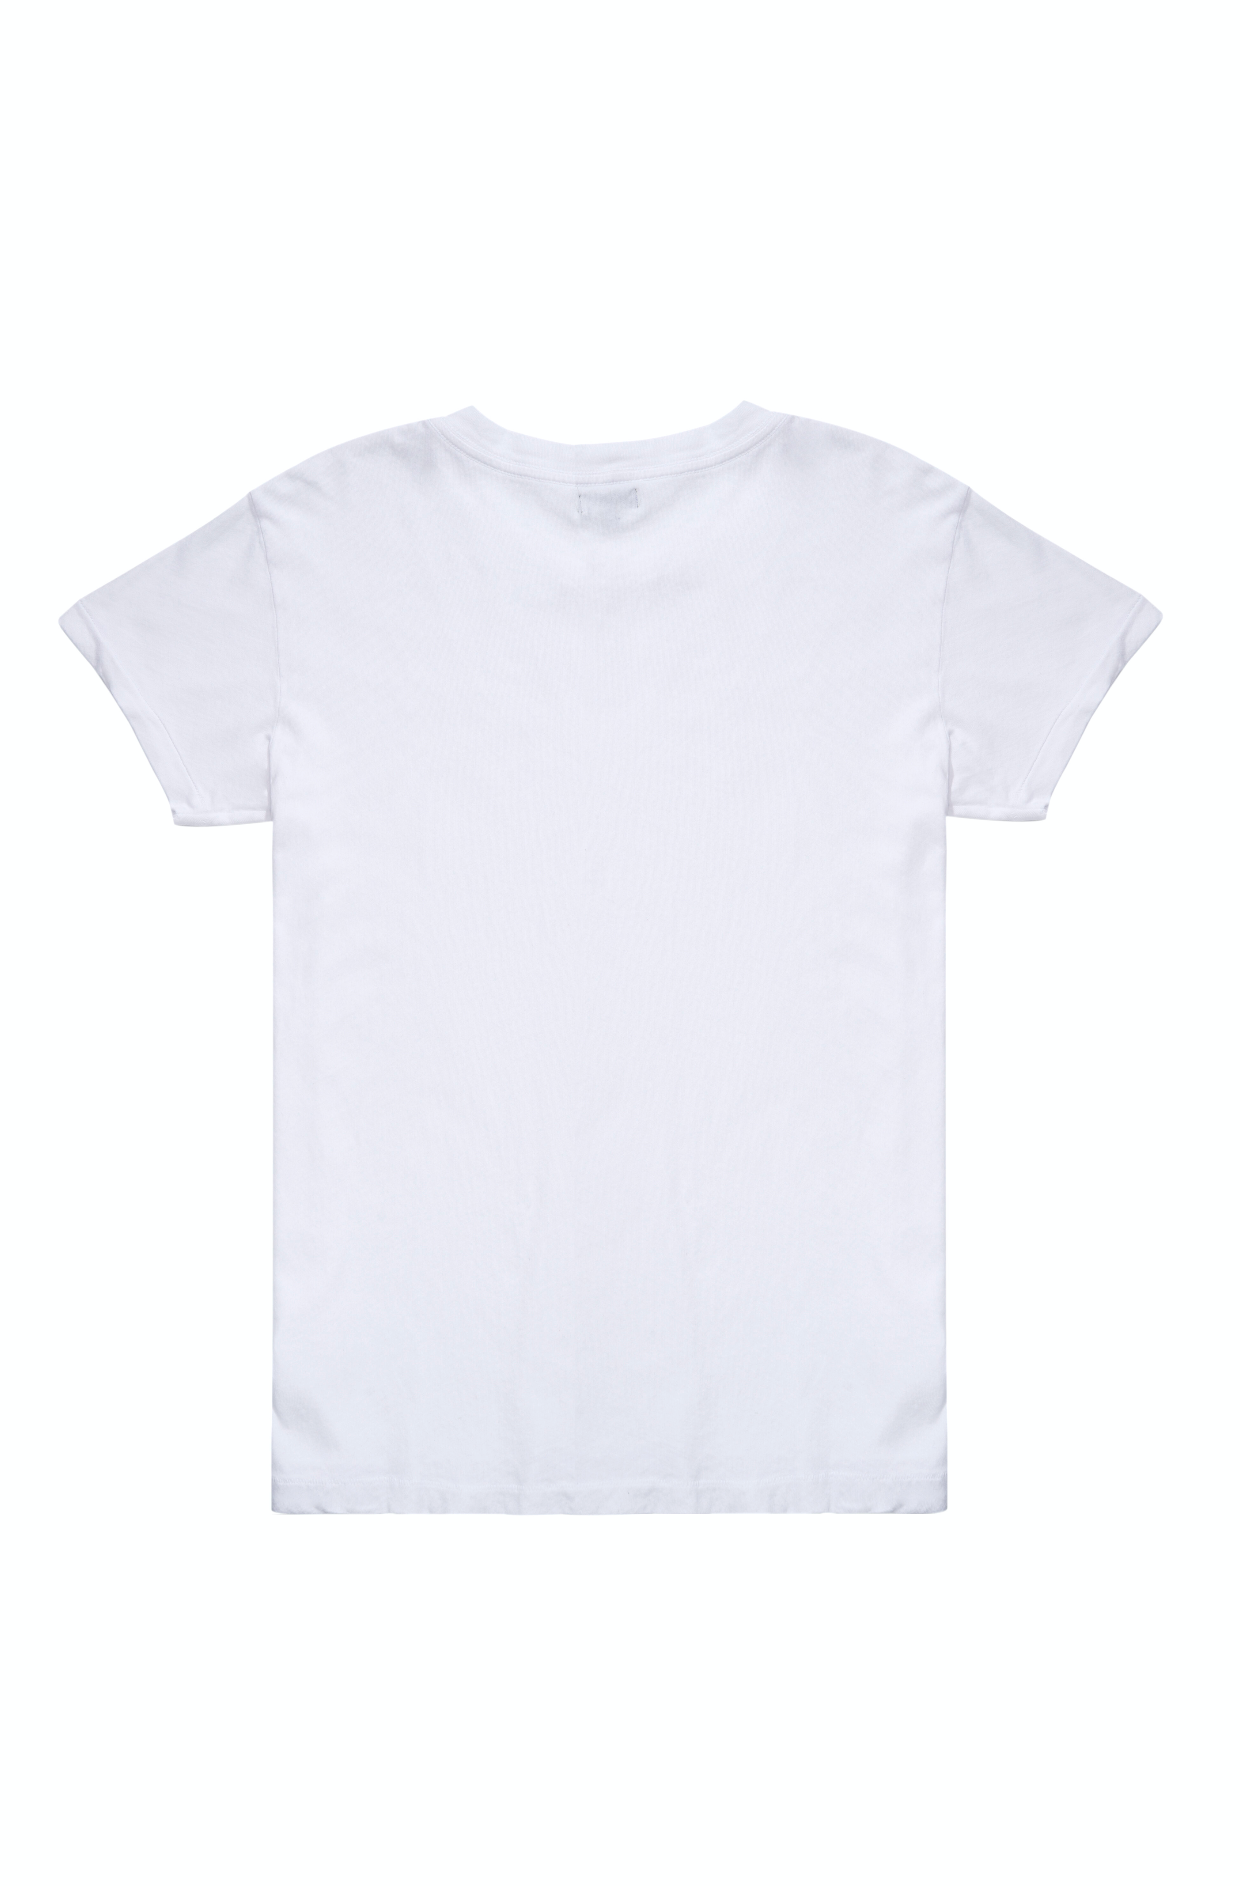 Kelly Cole Unisex Signature Blank T-Shirt - Optic White